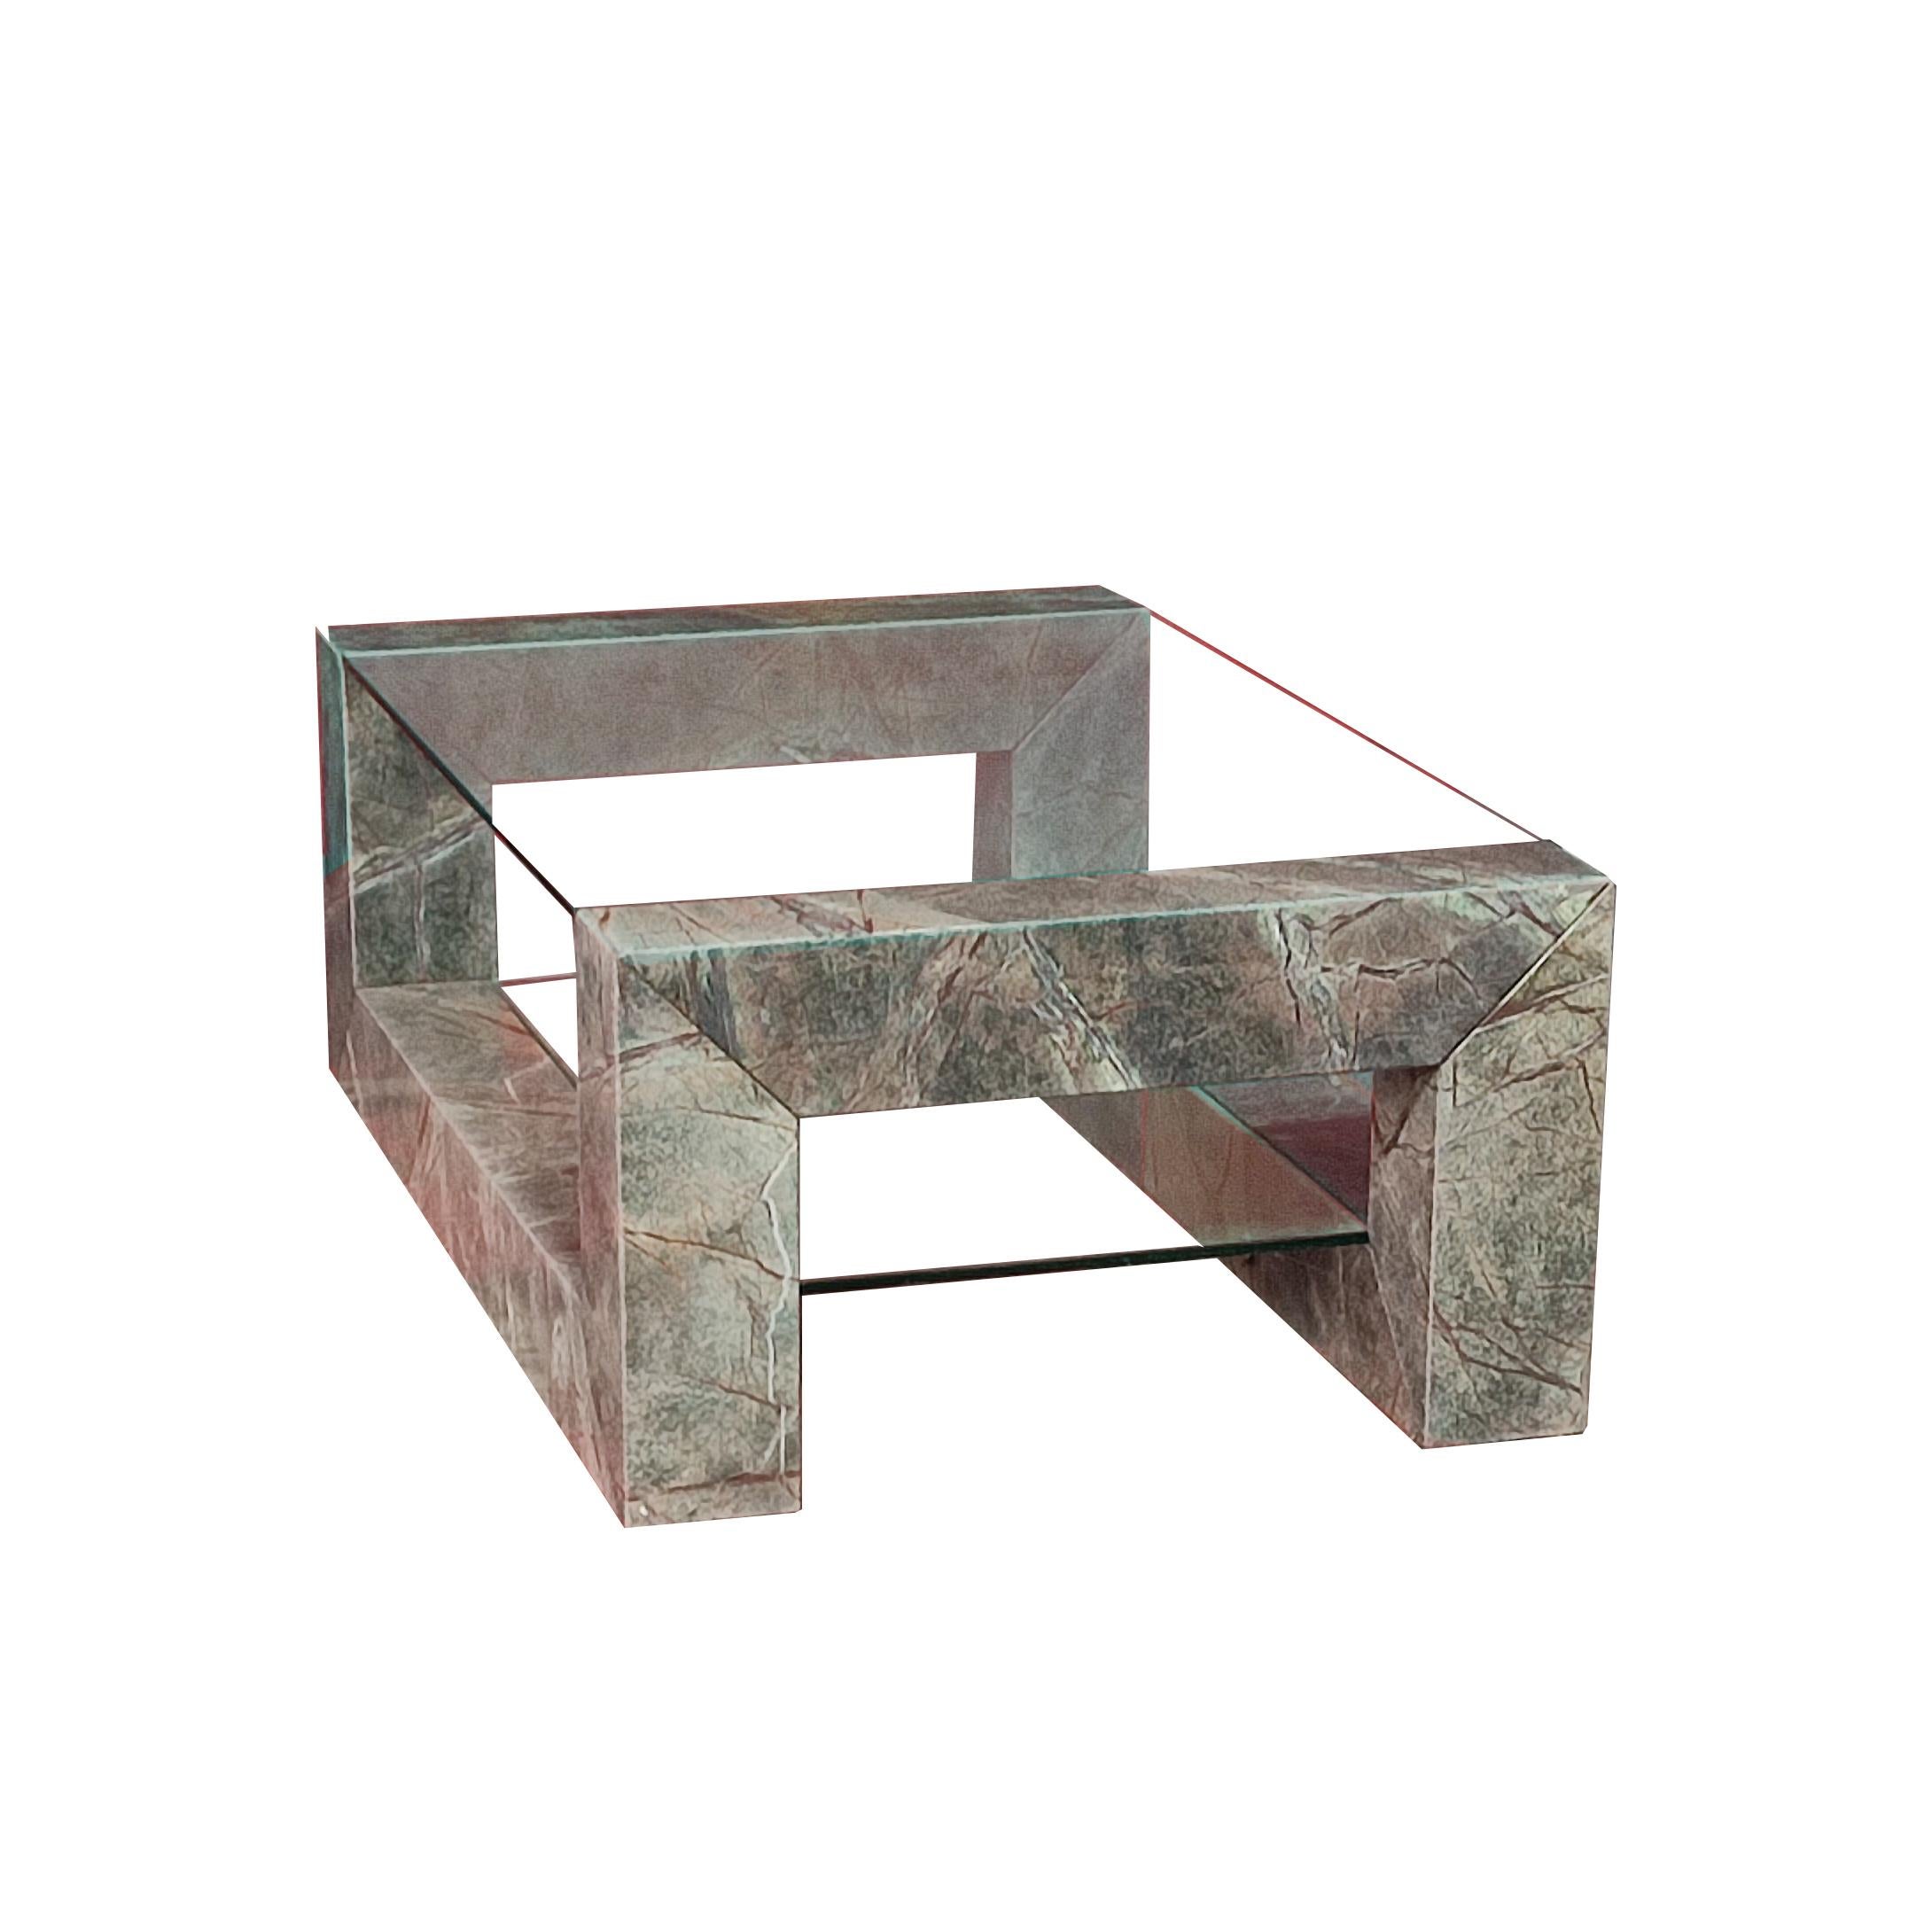 DEVON Table basse en marbre vert Design contemporain Espagne par Joaquín Moll Meddel

La table basse Devon est un meuble qui allie parfaitement style et fonctionnalité dans un seul et même design. Une création de Joaquín Moll pour Meddel, un design